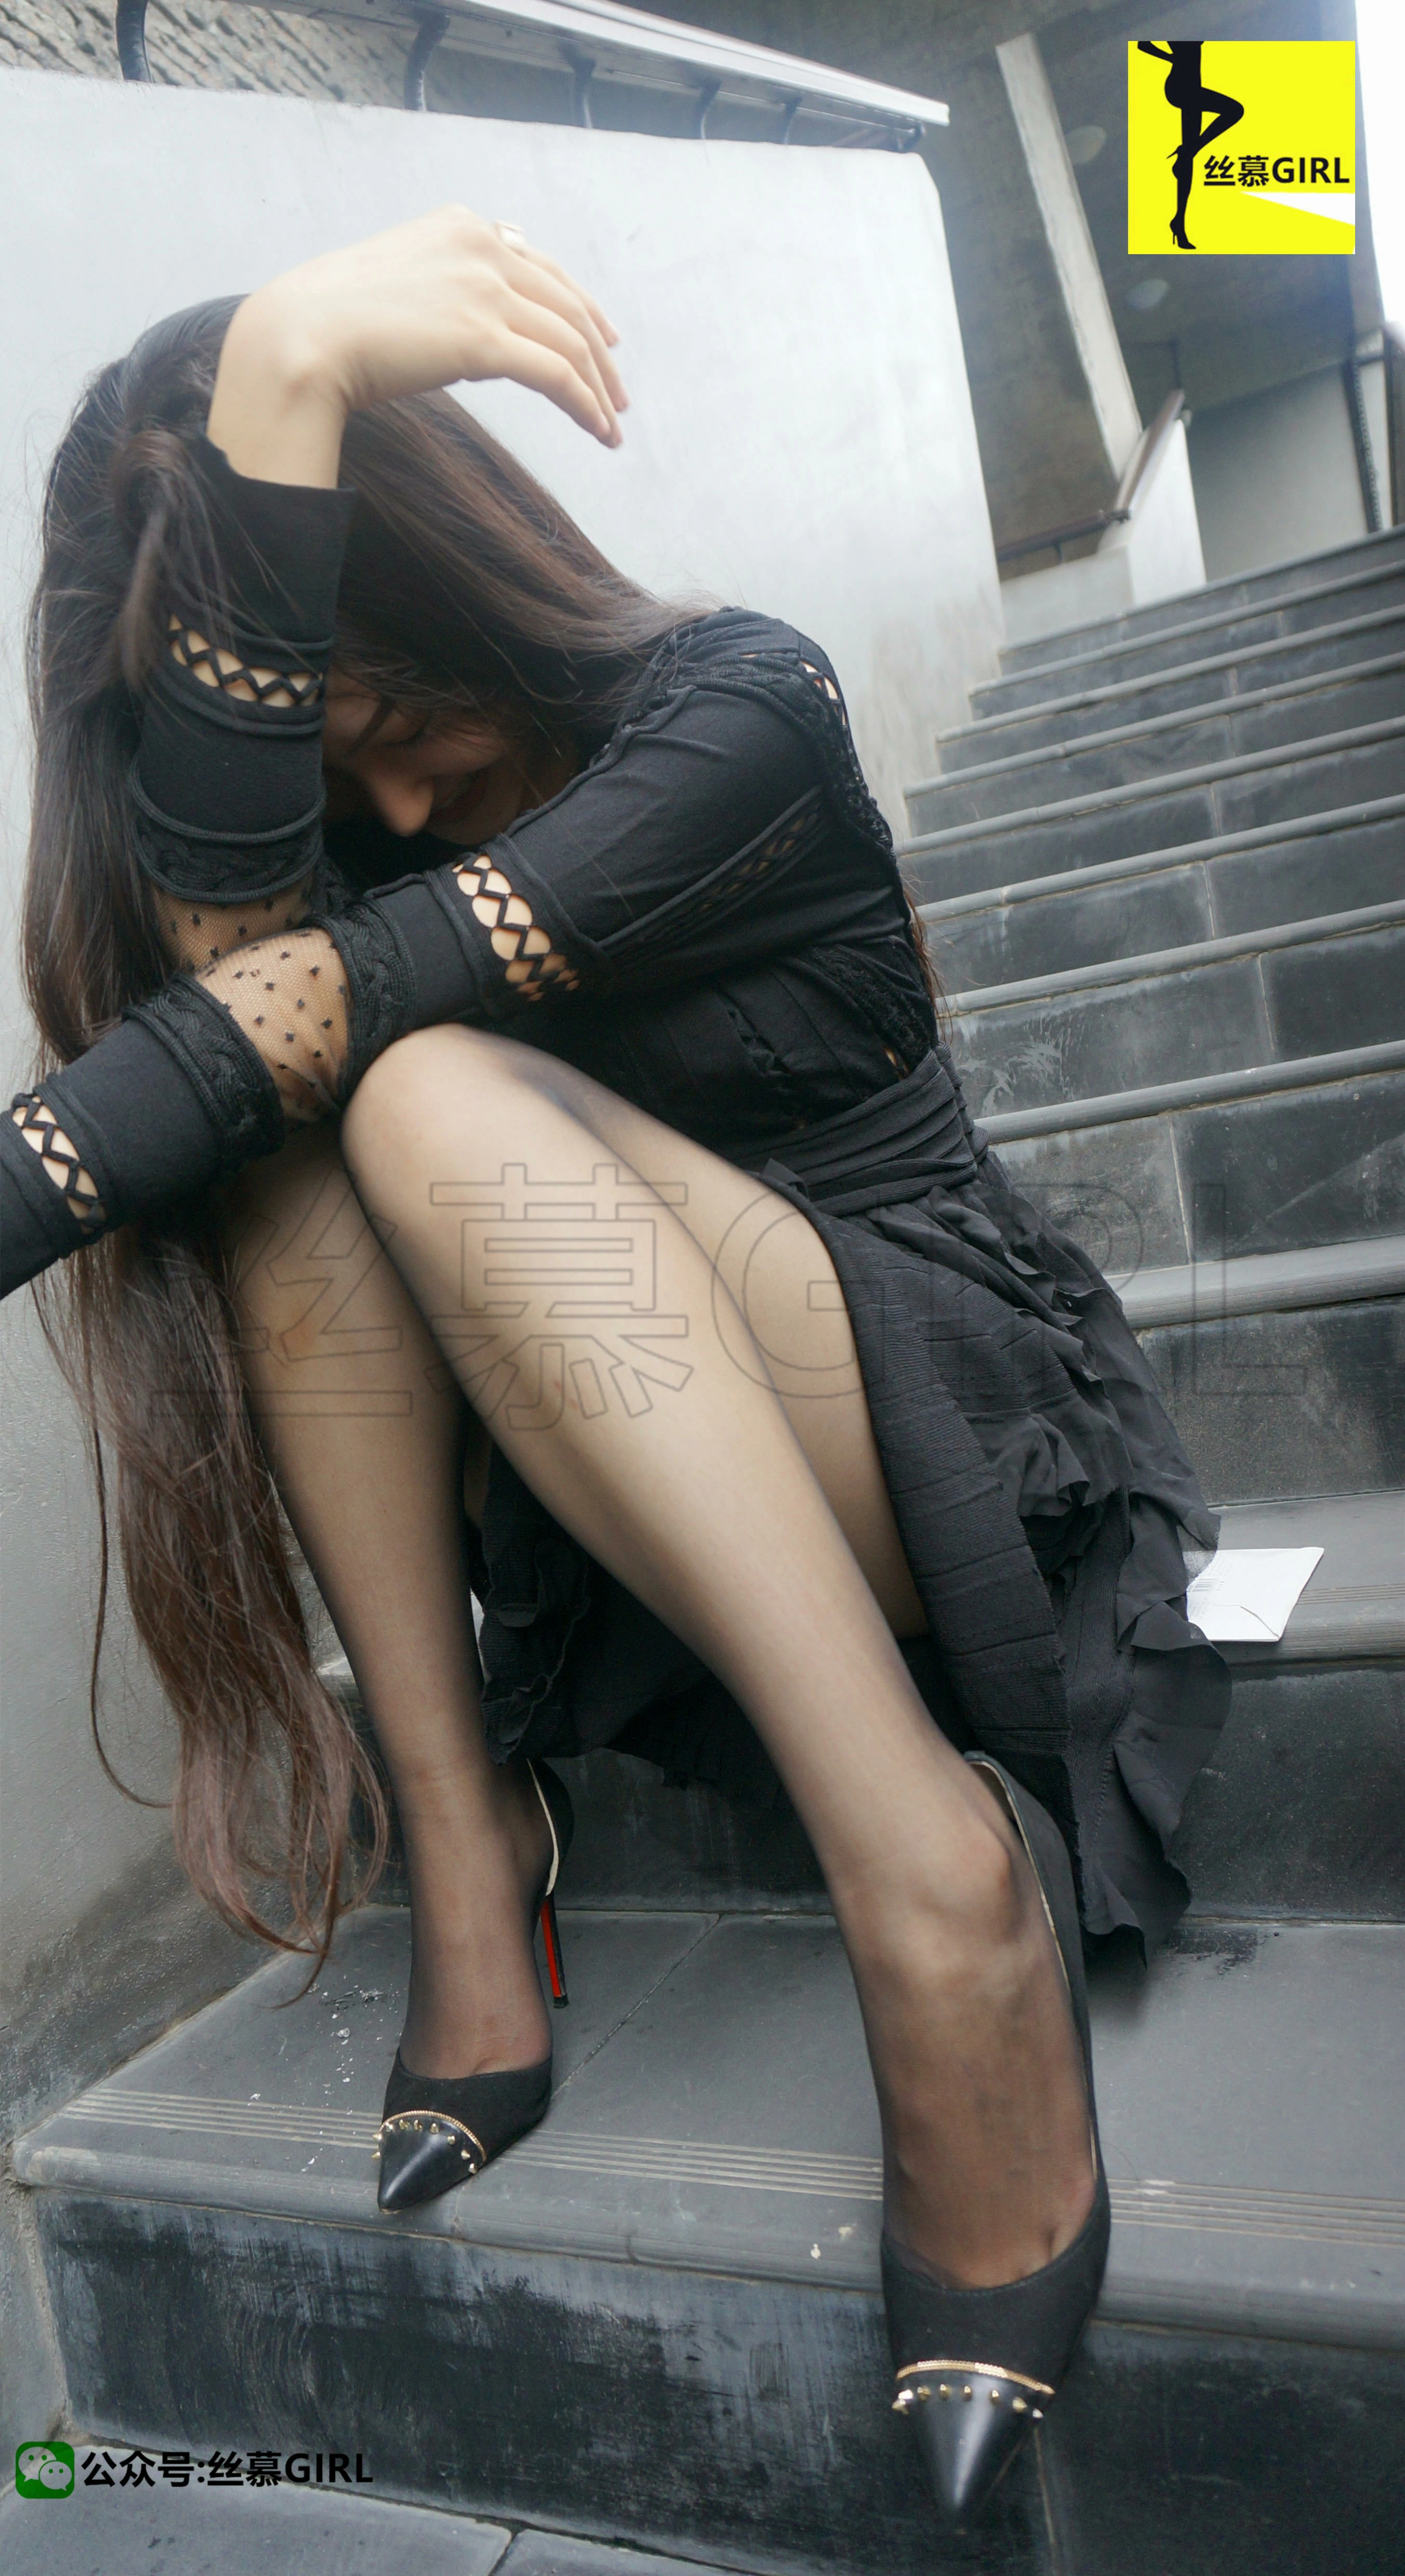 [丝慕GIRL]NO.005 《西西里的美丽传说》 尹主管 丝密系列 黑色蕾丝连衣裙加黑丝美腿,